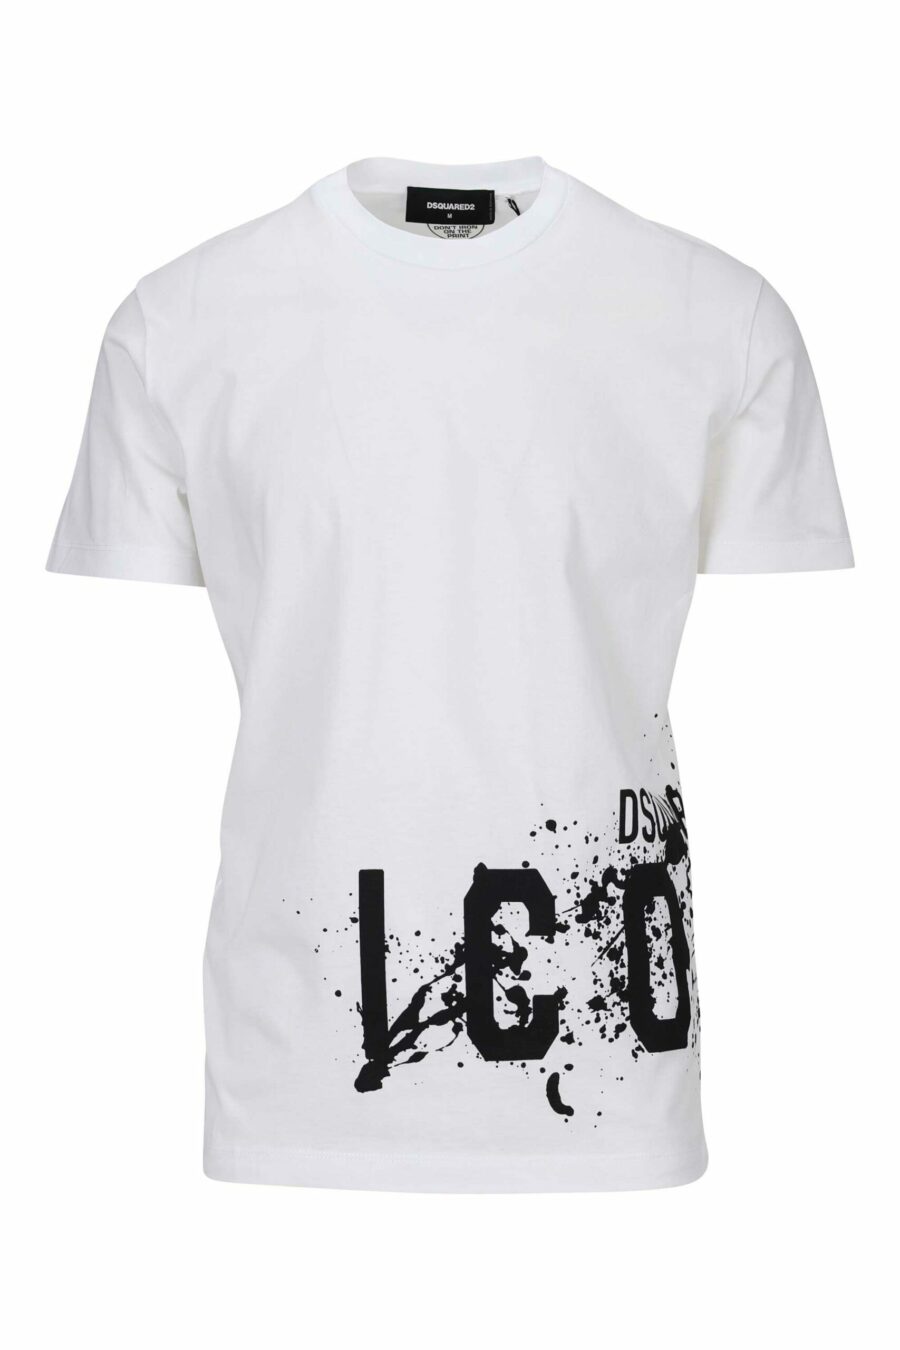 White T-shirt with "icon splash" maxilogo underneath - 8054148358549 scaled